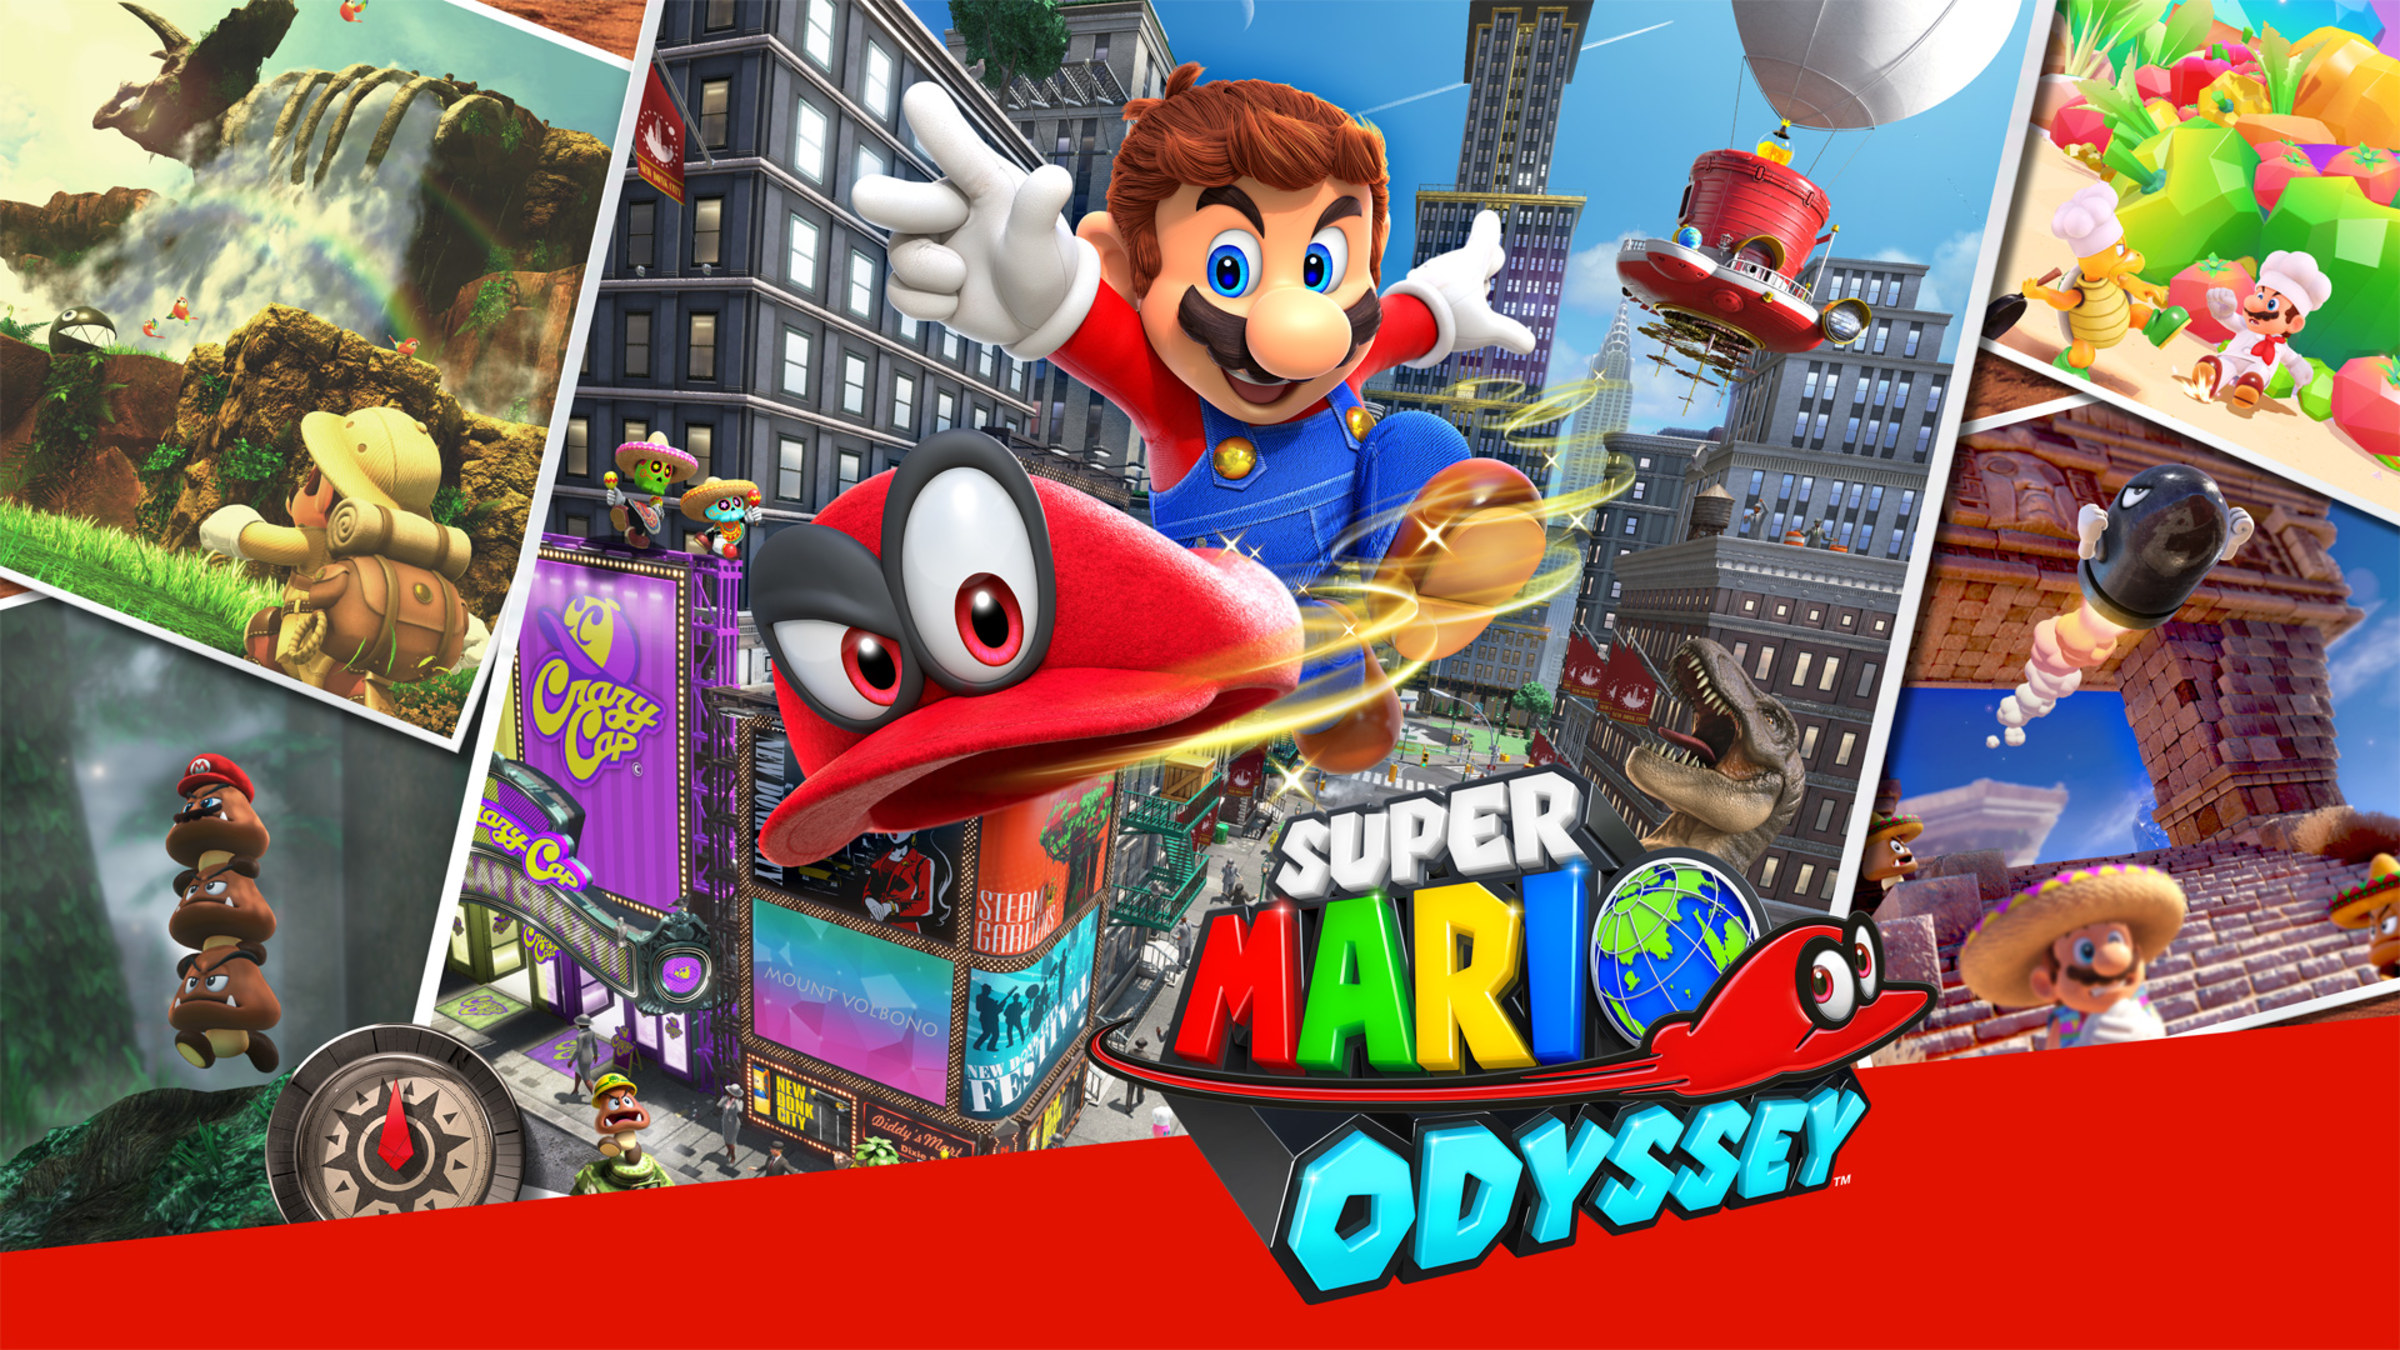 Jumping jack converteerbaar Uiterlijk Super Mario Odyssey™ for Nintendo Switch - Nintendo Official Site